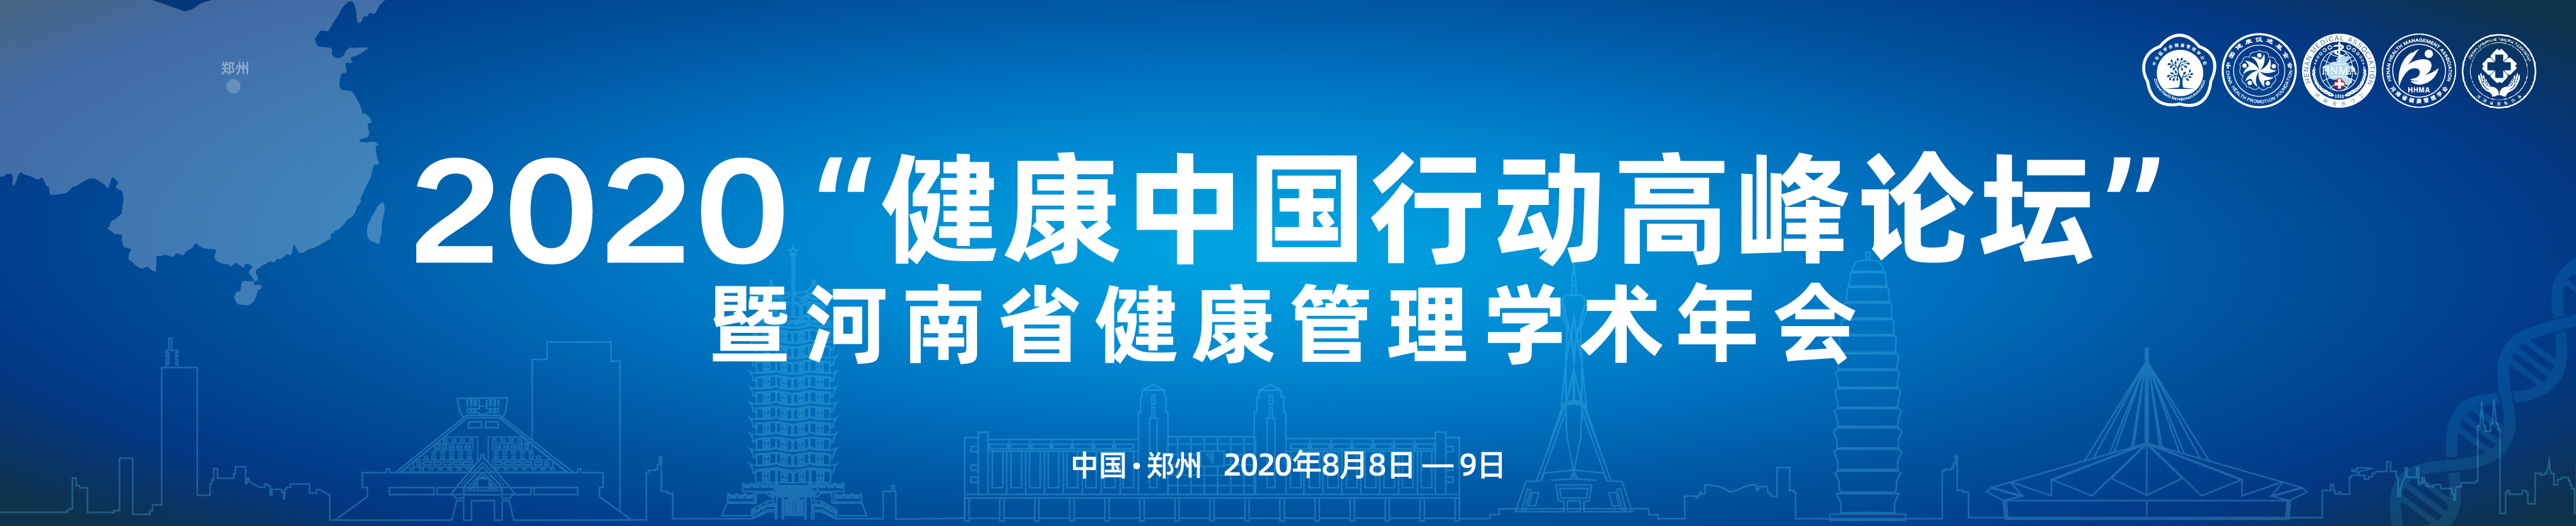 2020“健康中国行动高峰论坛” 暨河南省健康管理学术年会